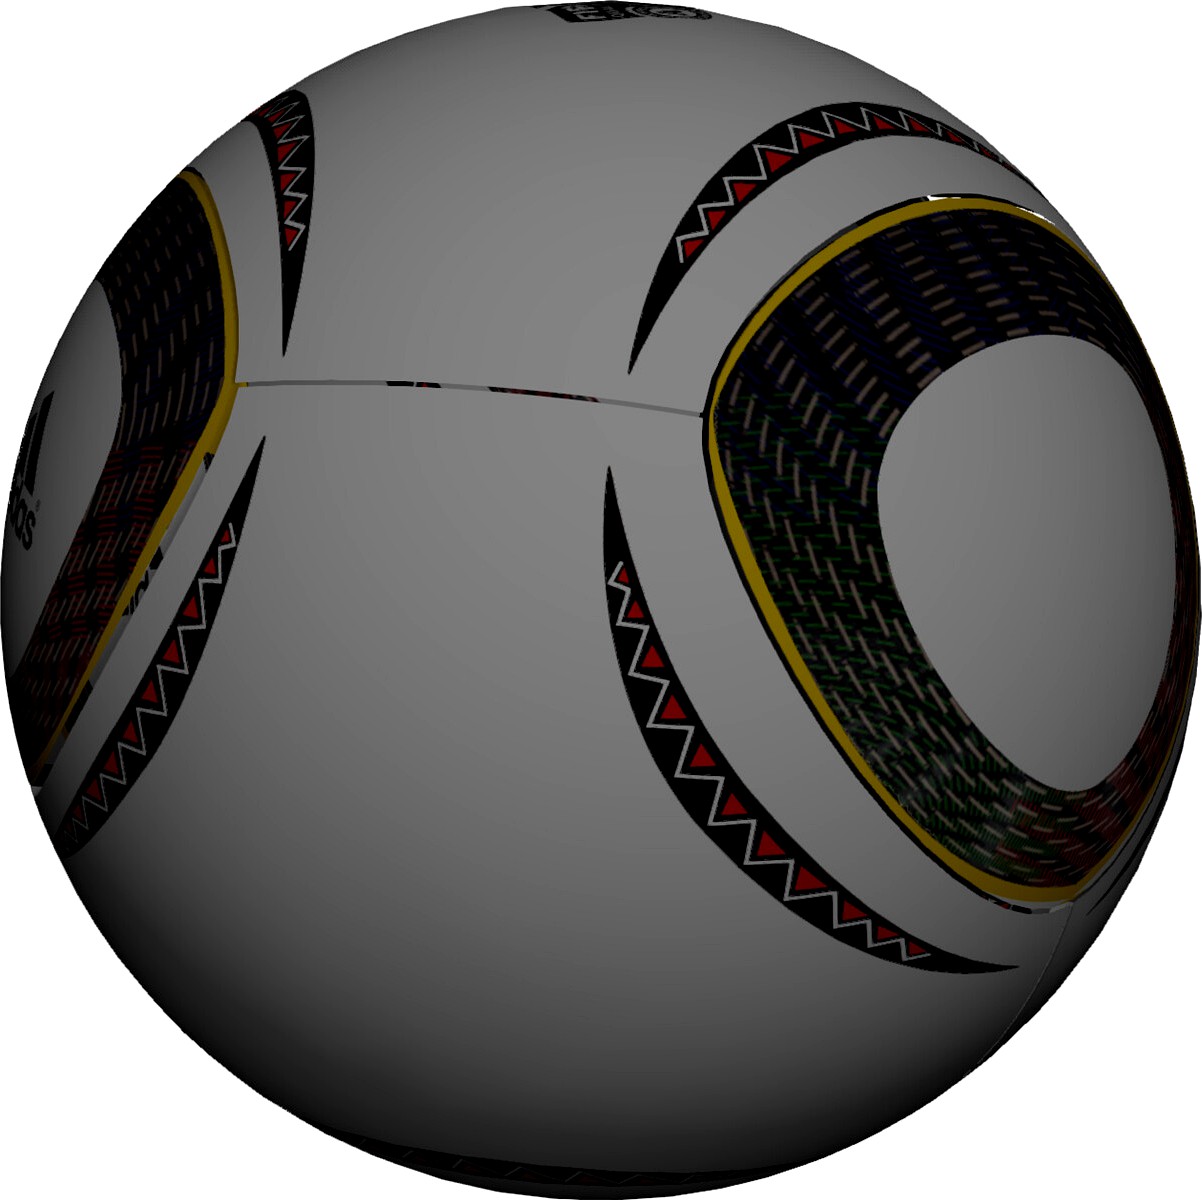 Soccer Ball Adidas Jabulani Official FIFA World Cup 2010